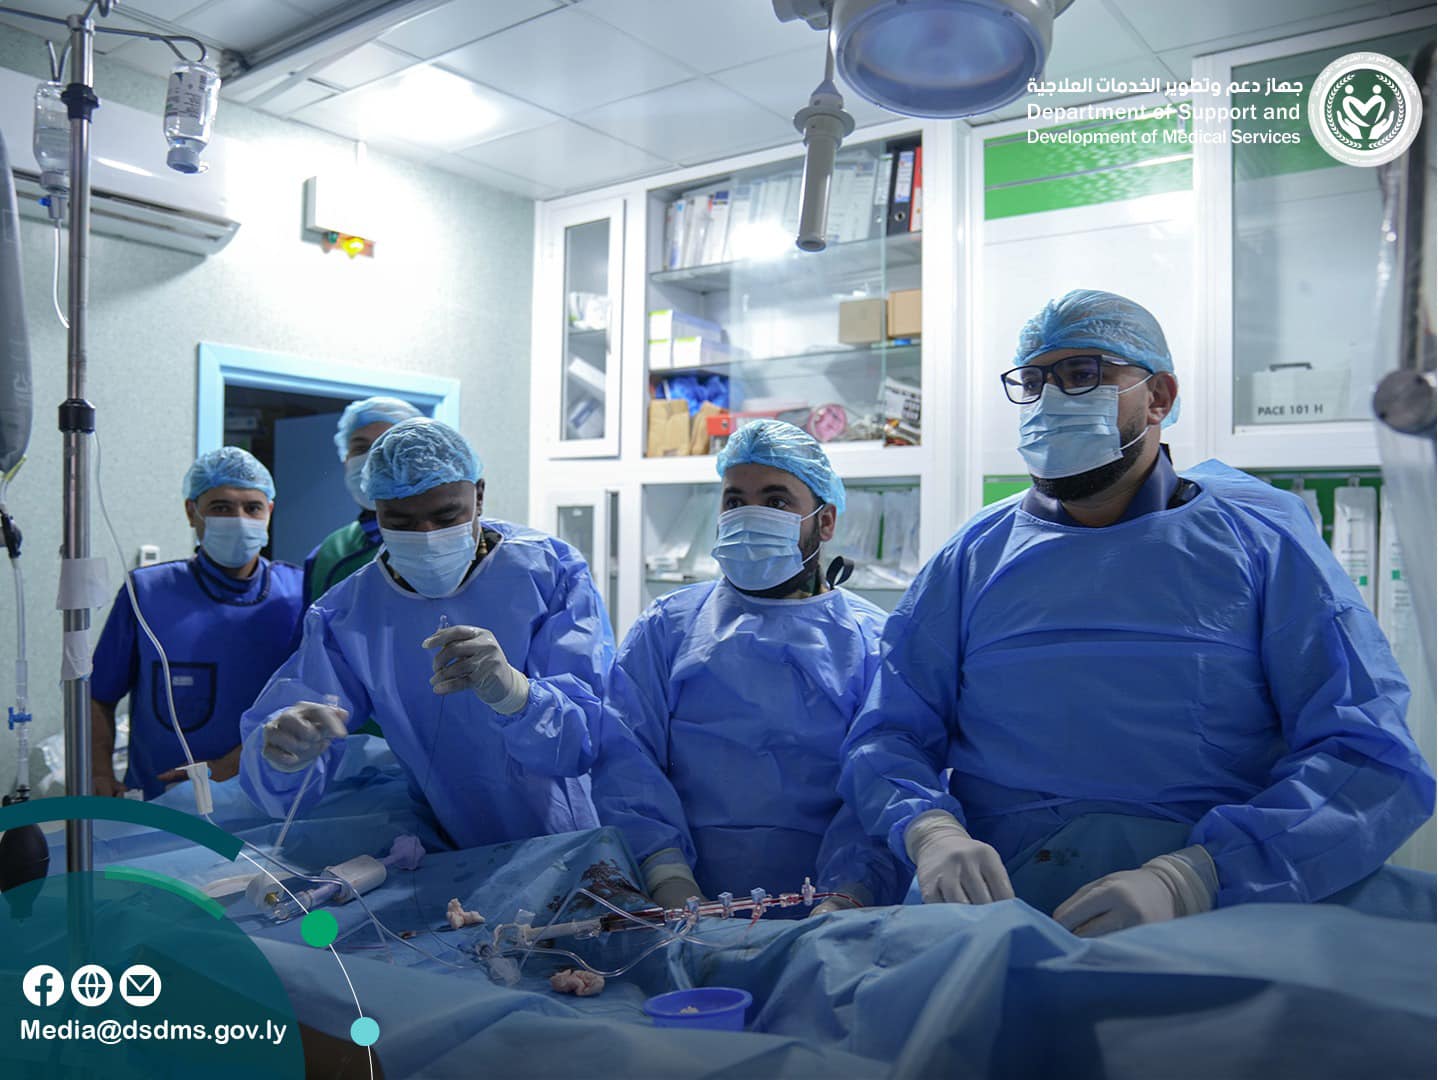 (7) عمليات قسطرة قلبية تتكلل بالنجاح في مستشفى الهضبة الخضراء العام بطرابلس.